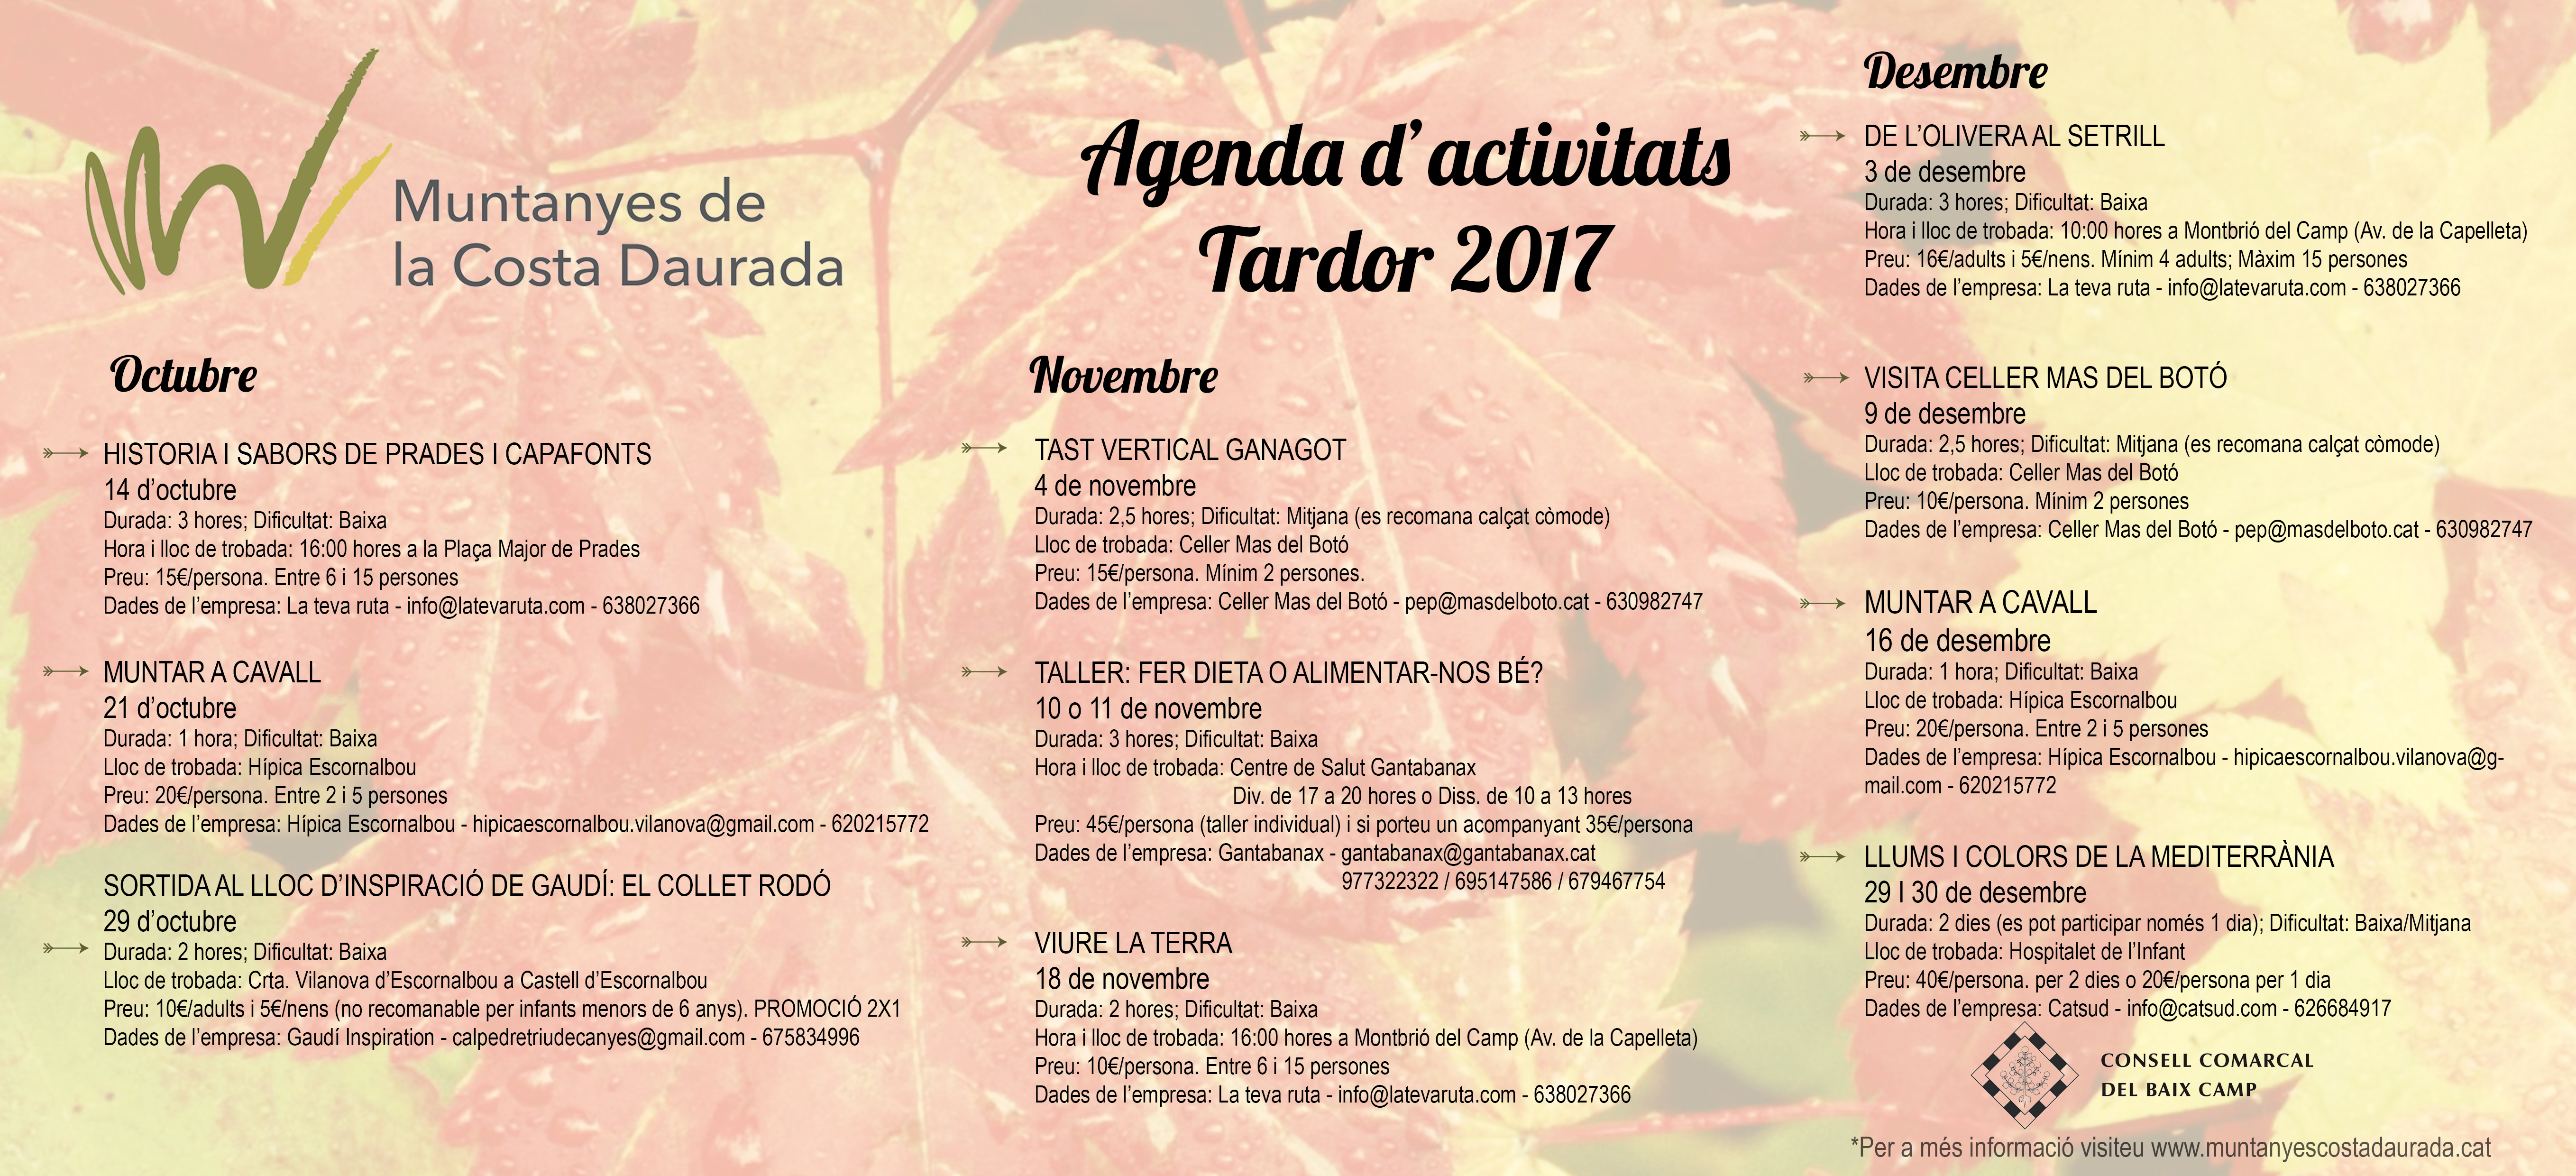 Nuevo catálogo de actividades de otoño del Baix Camp